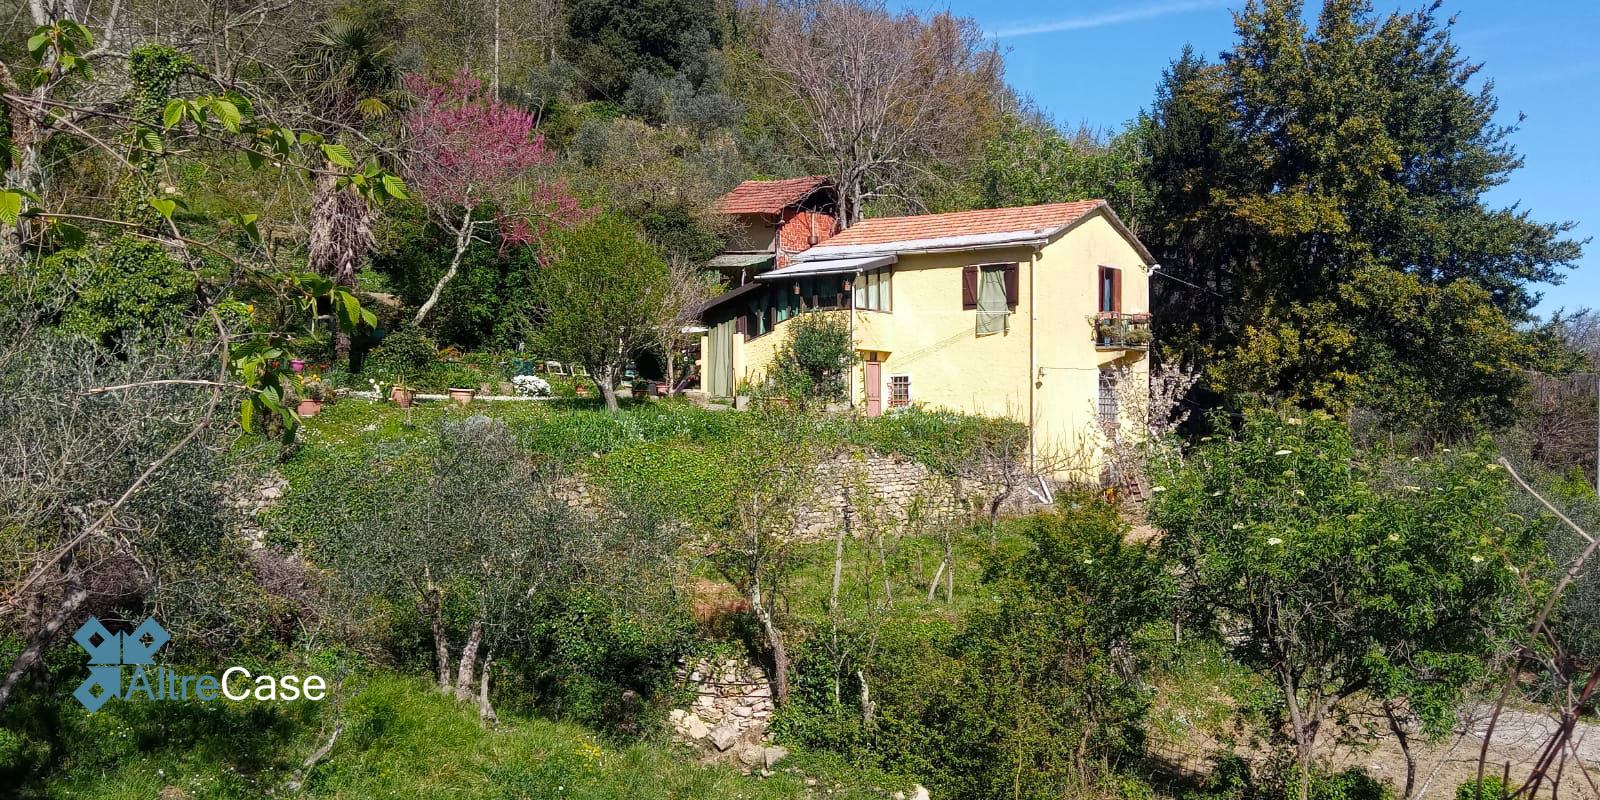 Camogli Casa indipendente immersa nella bellissima cornice del Monte di Portofino con ampio terreno